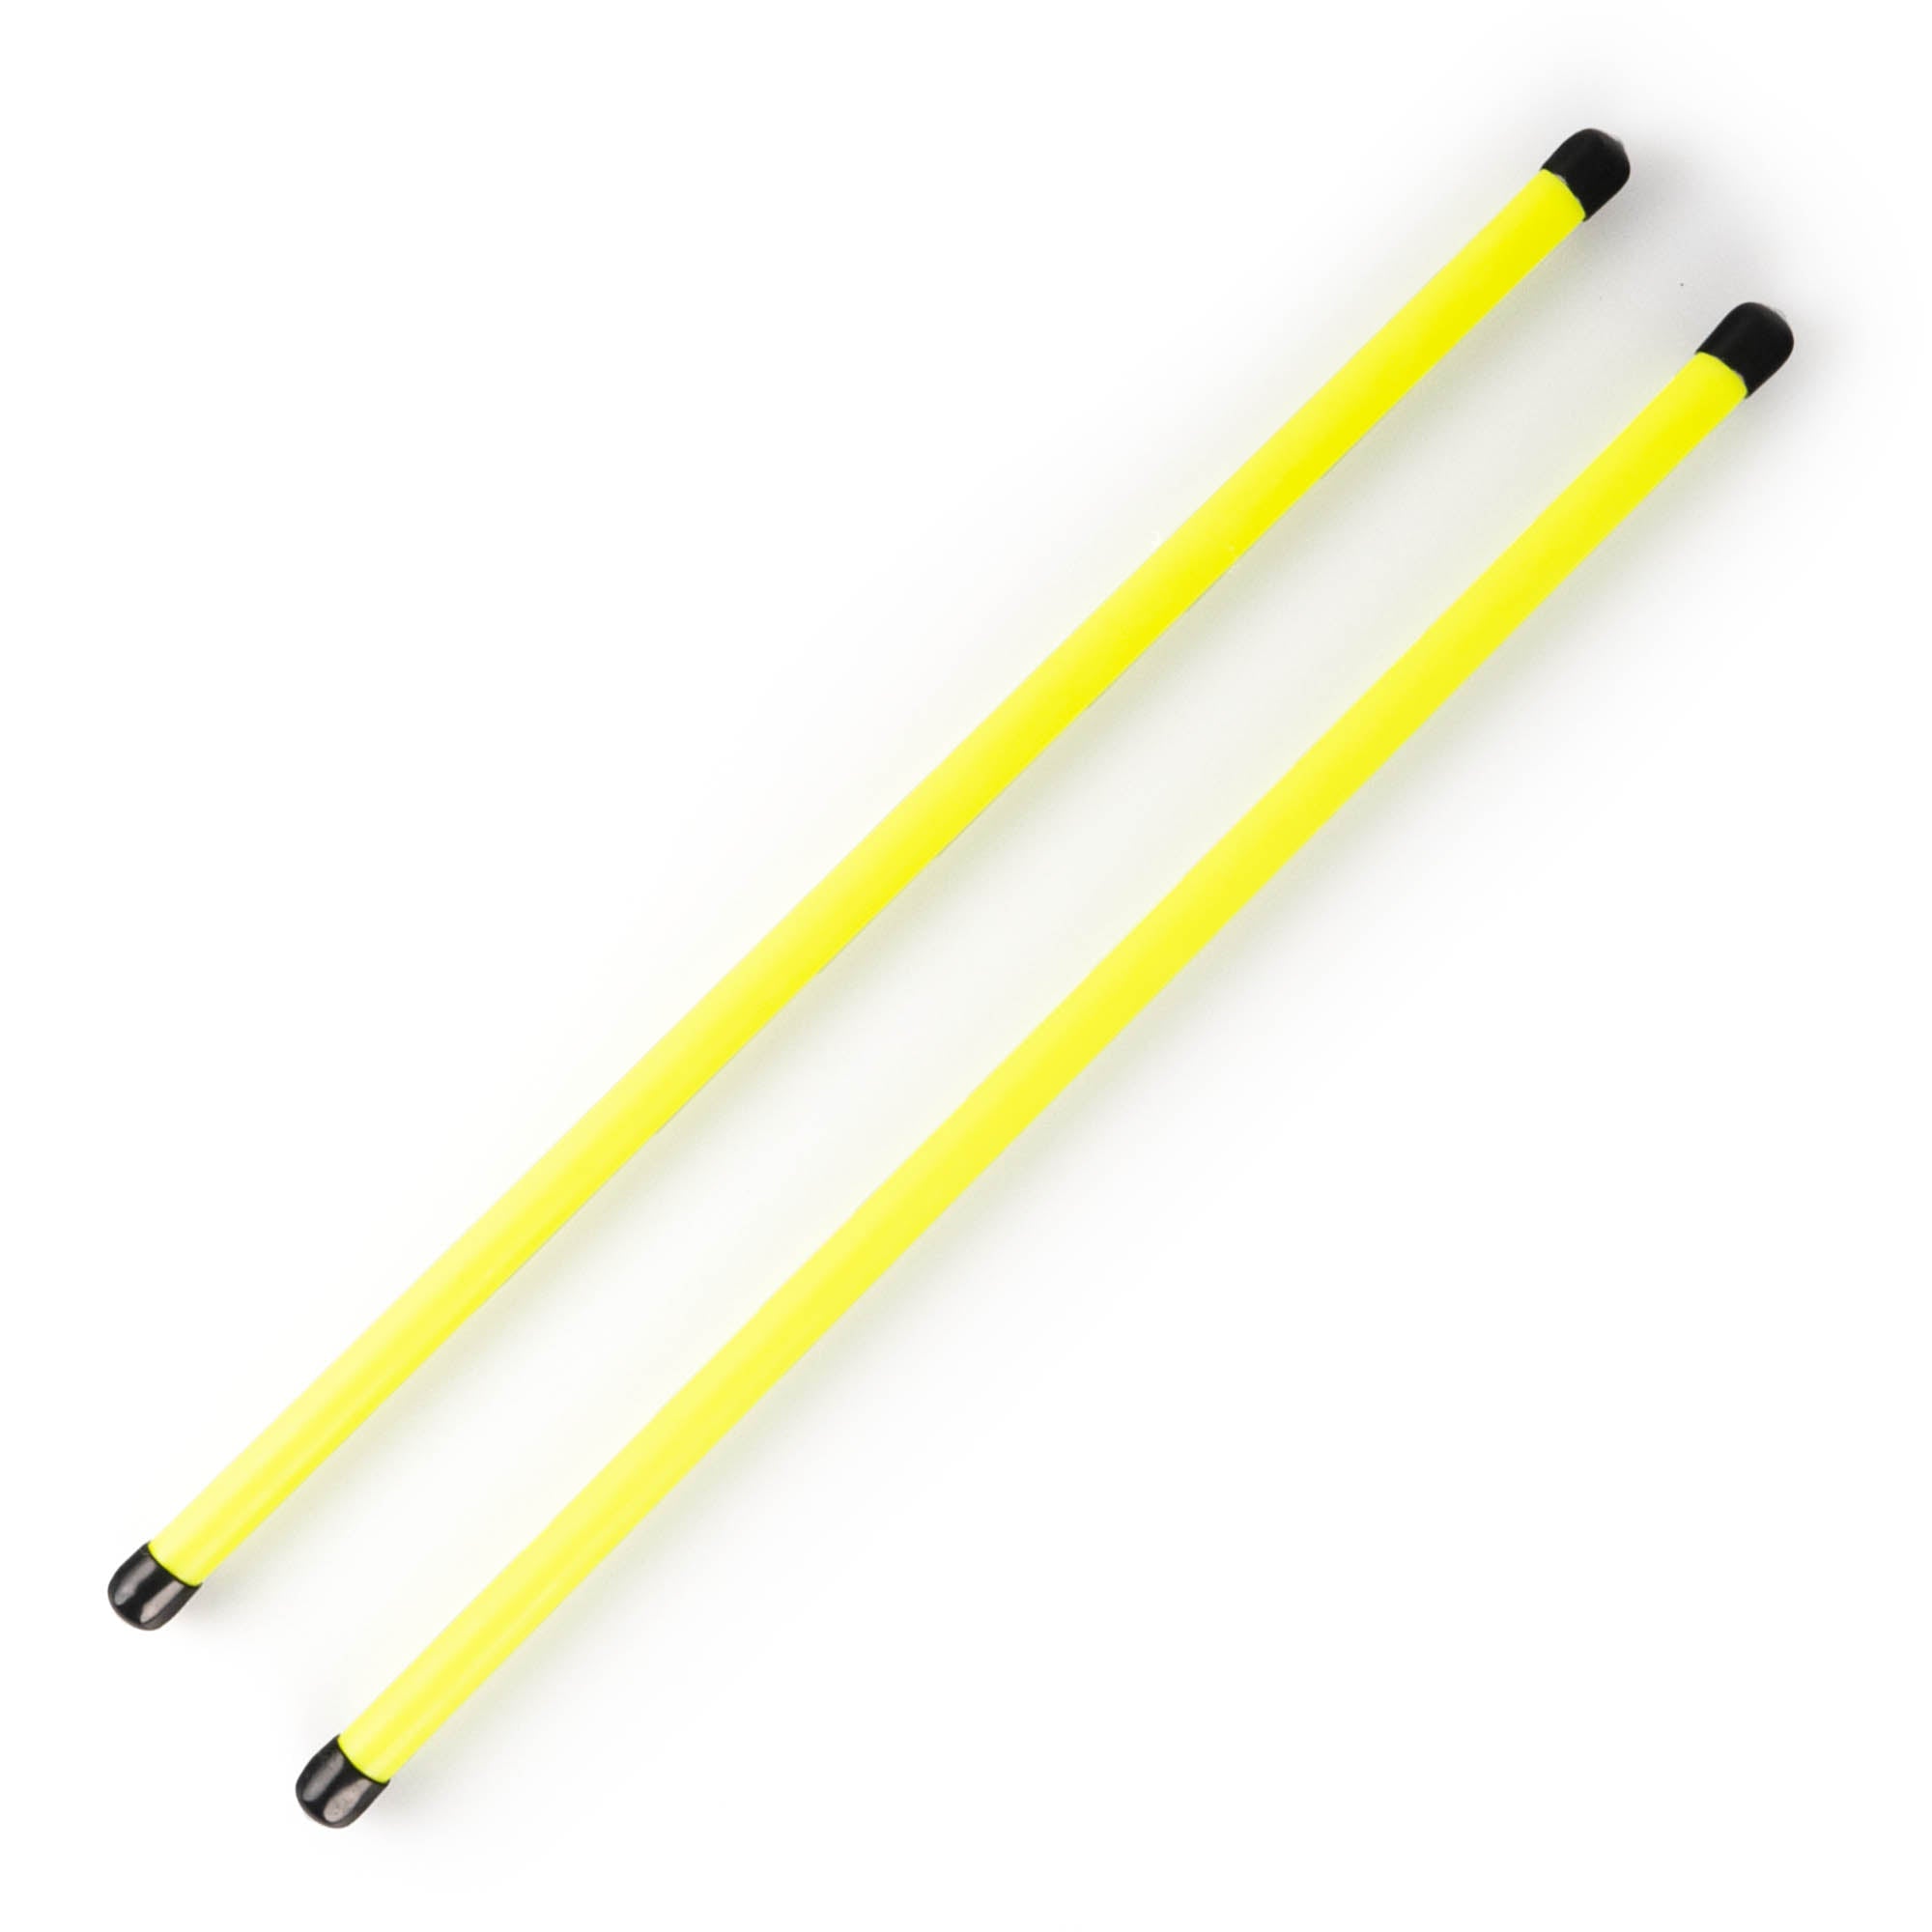 pair of UV yellow handsticks